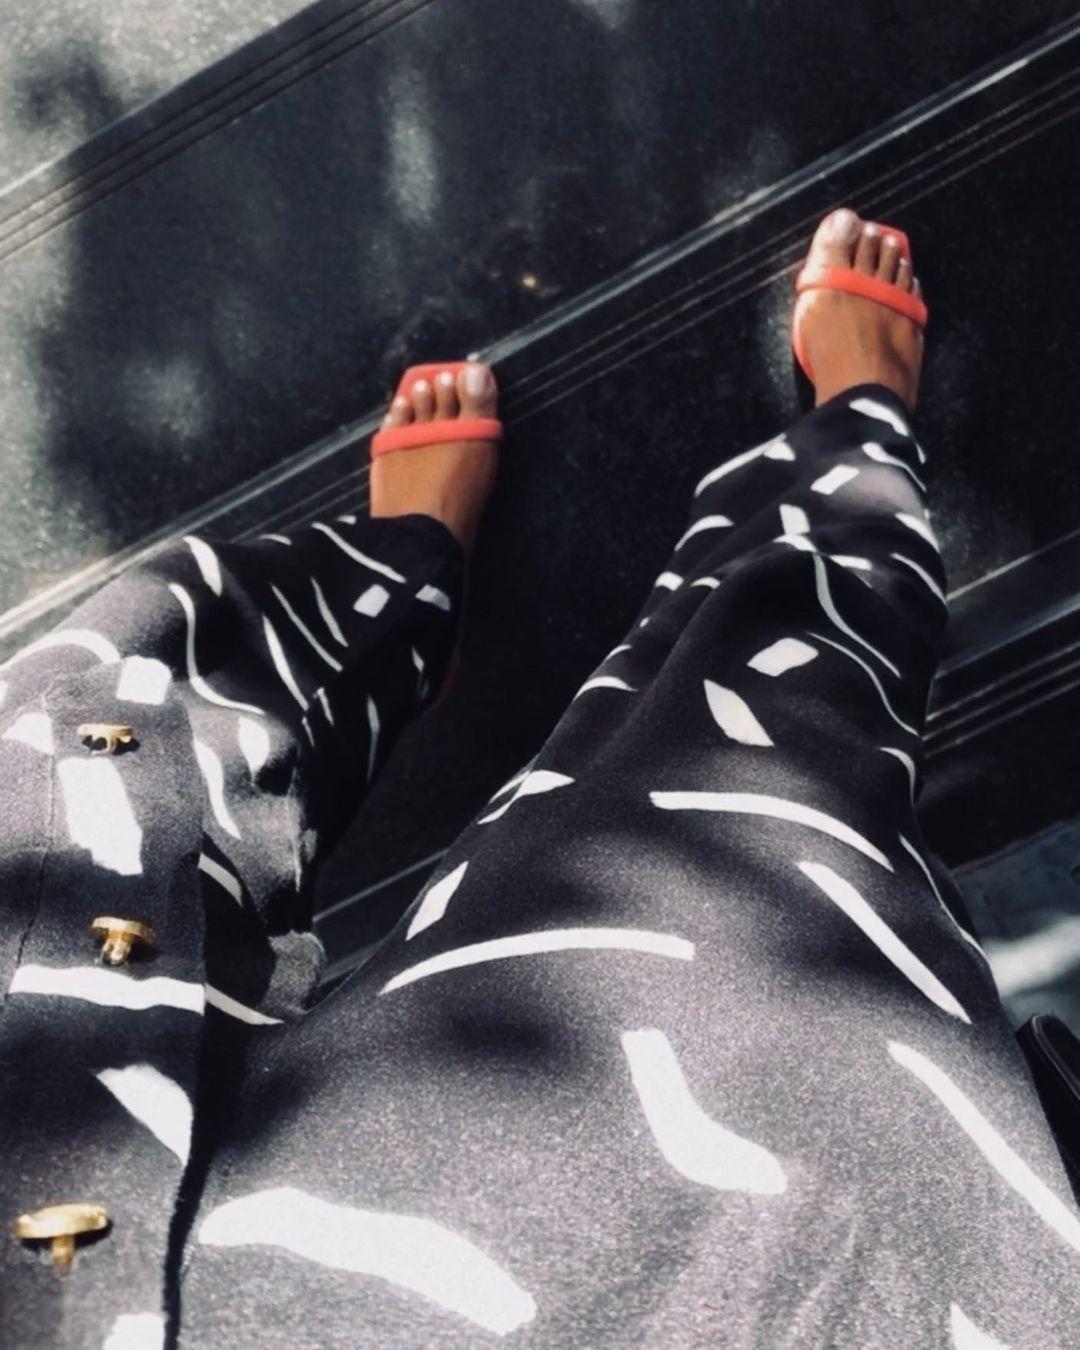 class="content__text"
 #loungewear | Para dormir e para sair. O estiloso Pijama Madan voltou e está disponível em nosso site. Arrase com o seu! 

 #loungewear #mapalingerie #homewear 
 